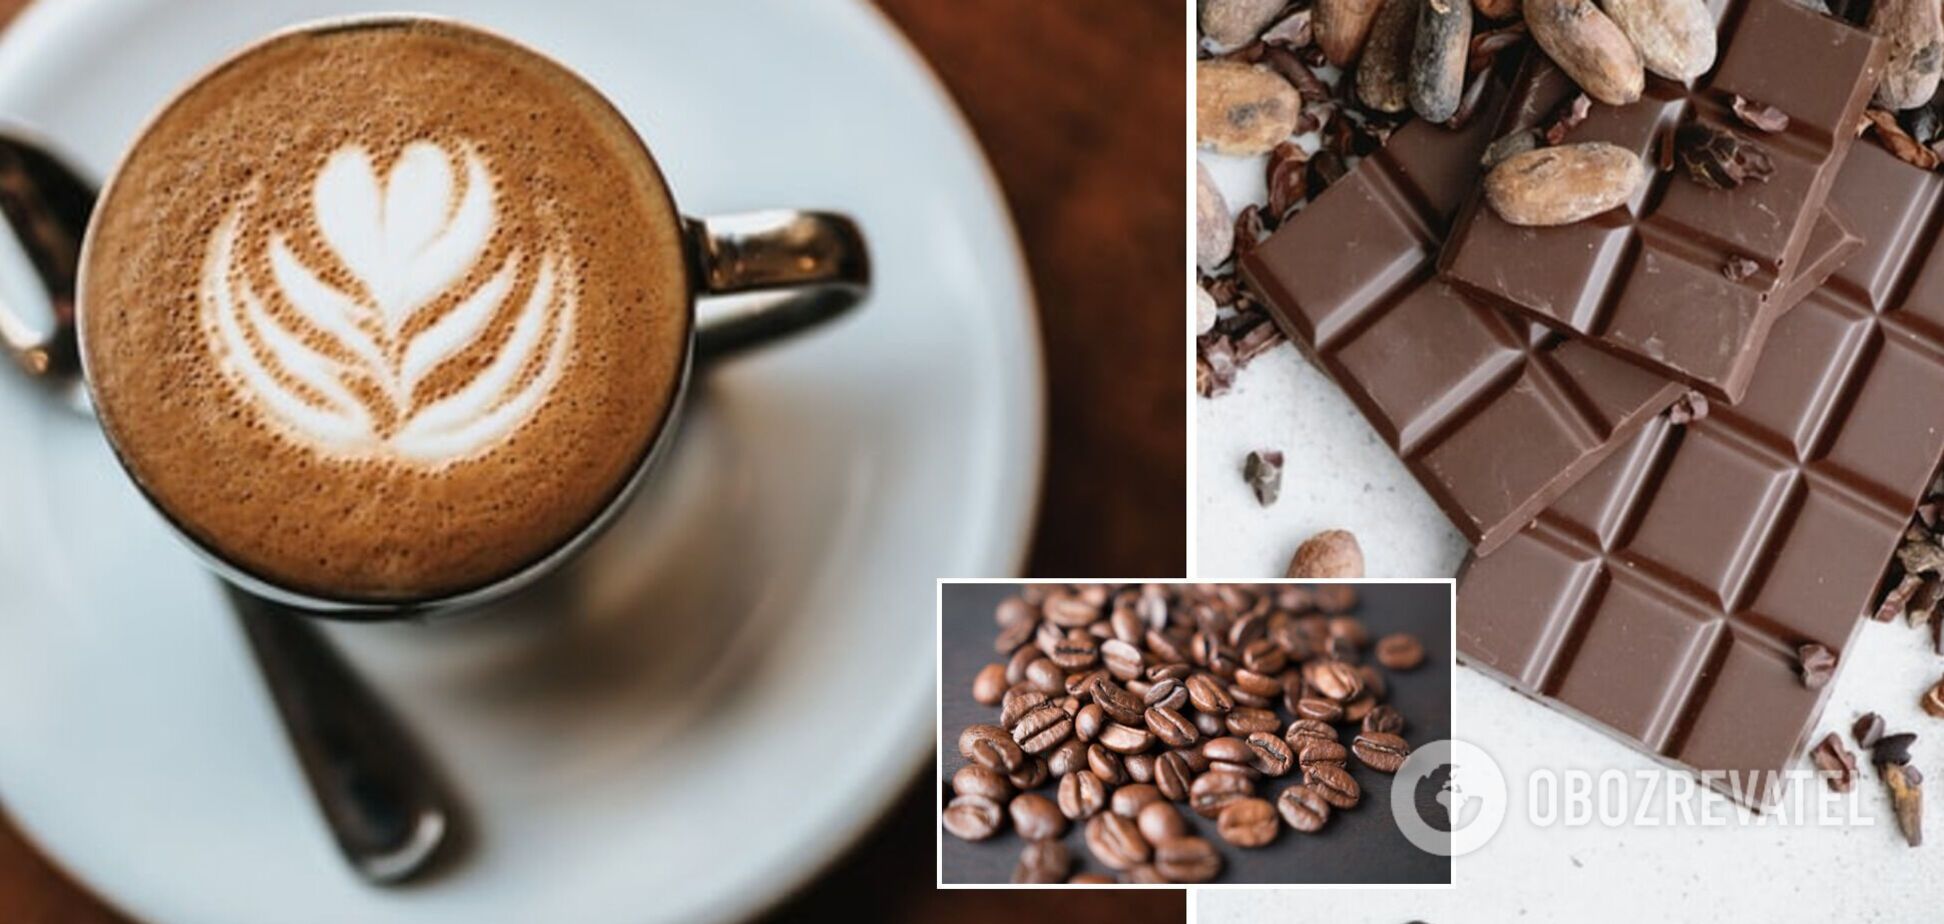 Вчені знайшли зв'язок між любов'ю до кави та шоколаду: справа в генетиці